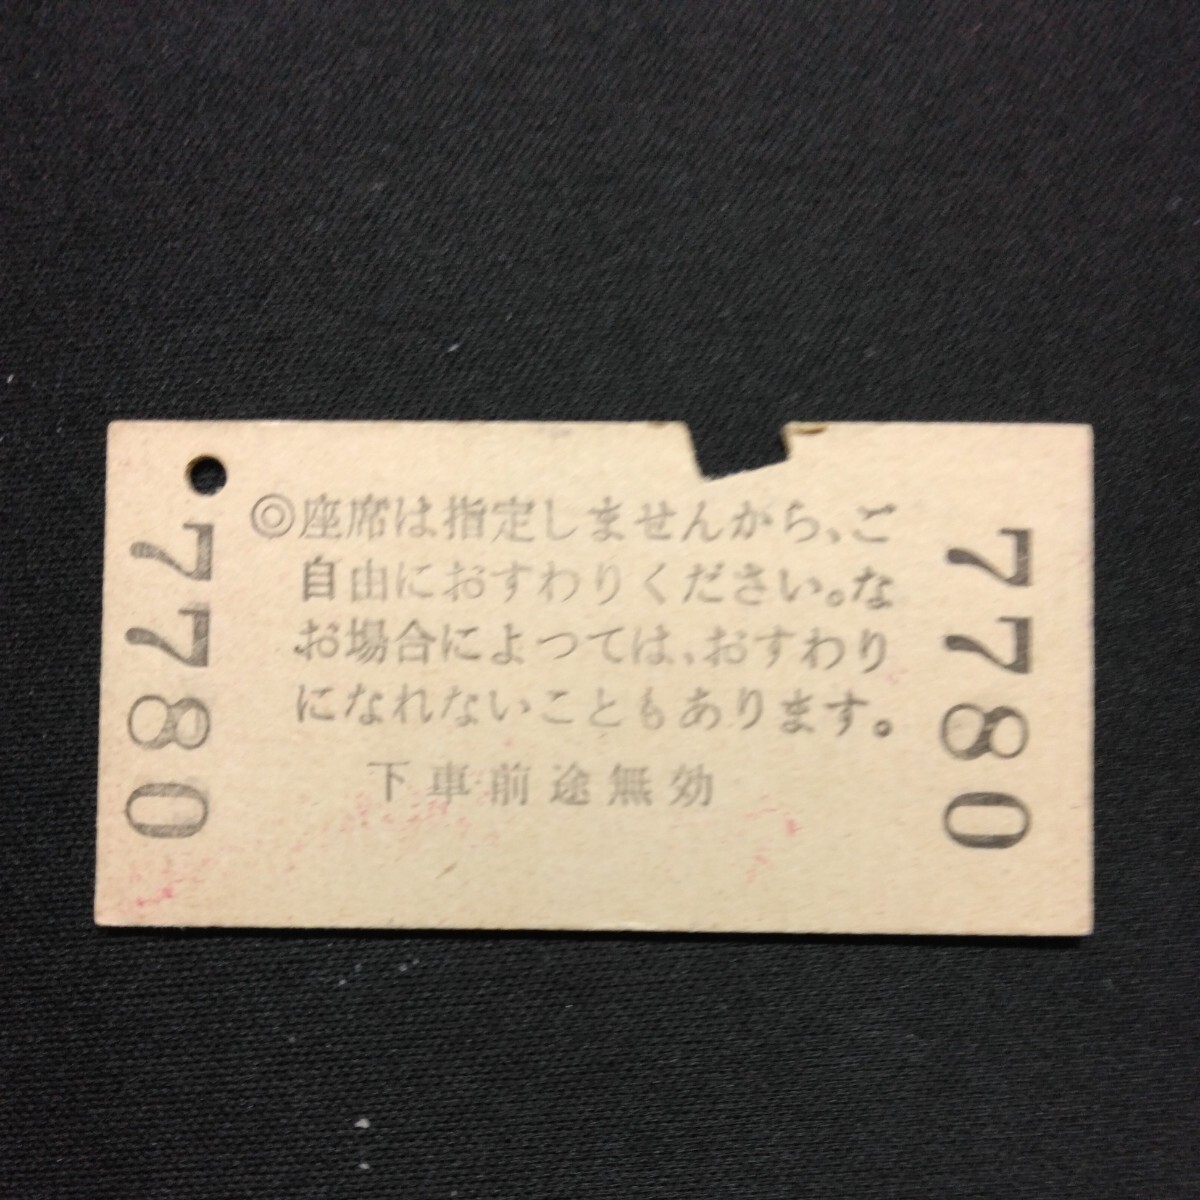 【7780】新幹線自由席 特急券 新神戸→岡山 A型 乗車券 硬券 国鉄 古い切符_画像2